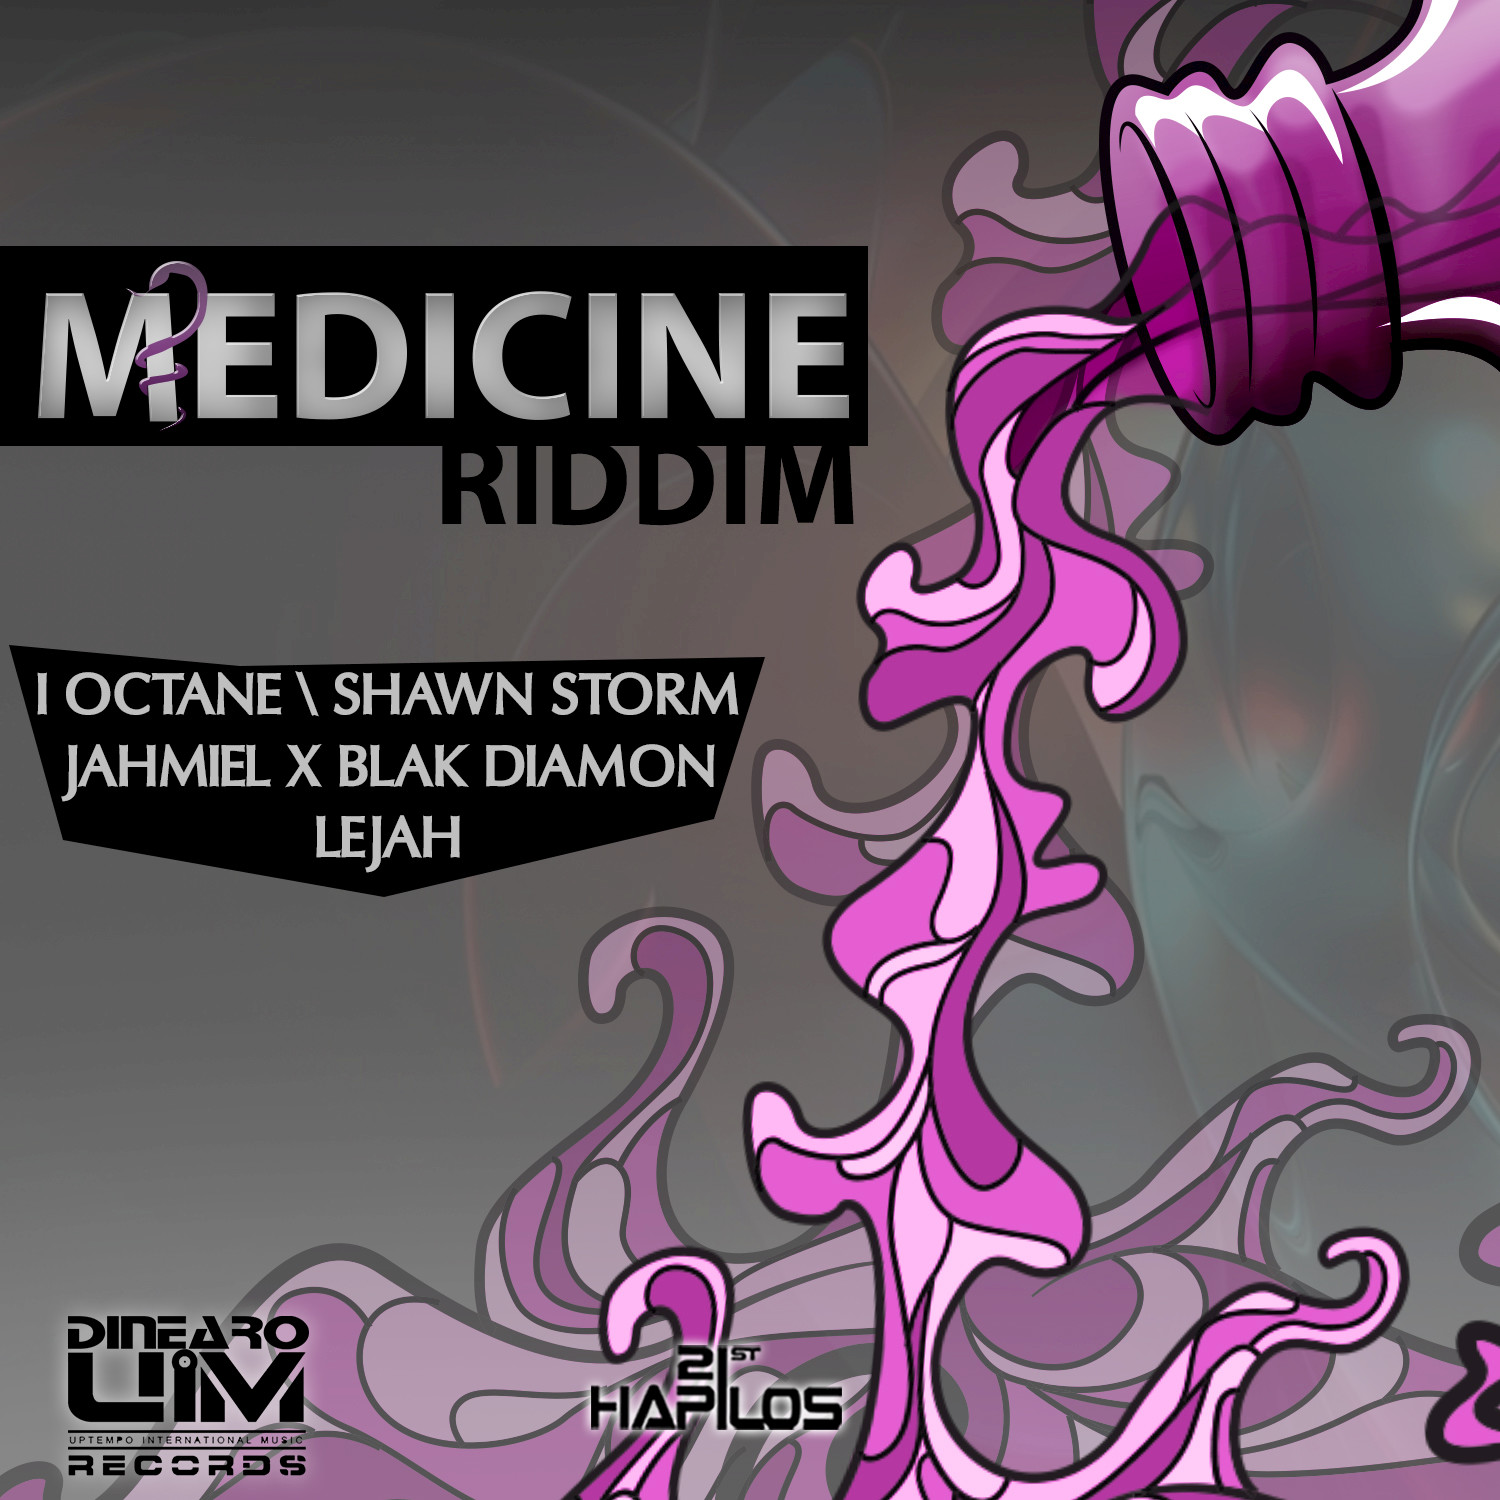 Medicine Riddim